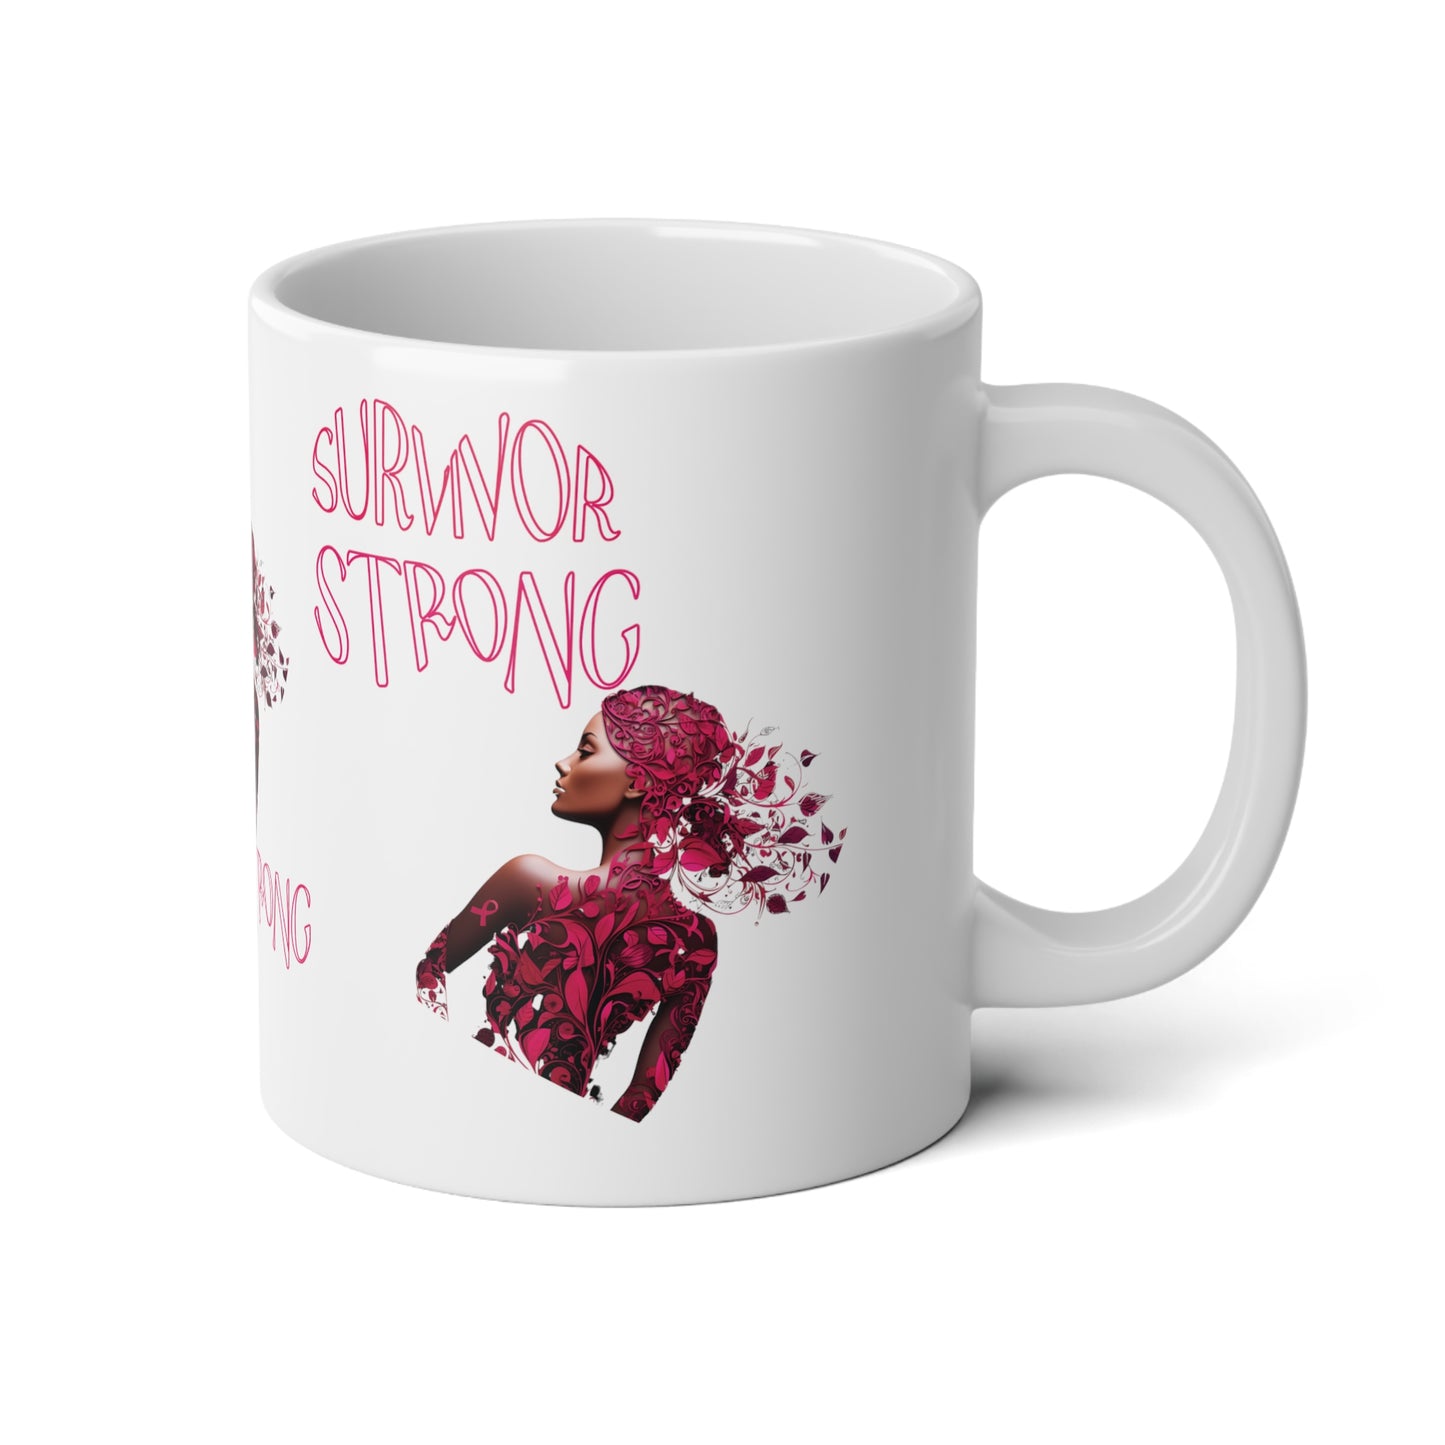 Survivor Strong Jumbo Mug, 20oz